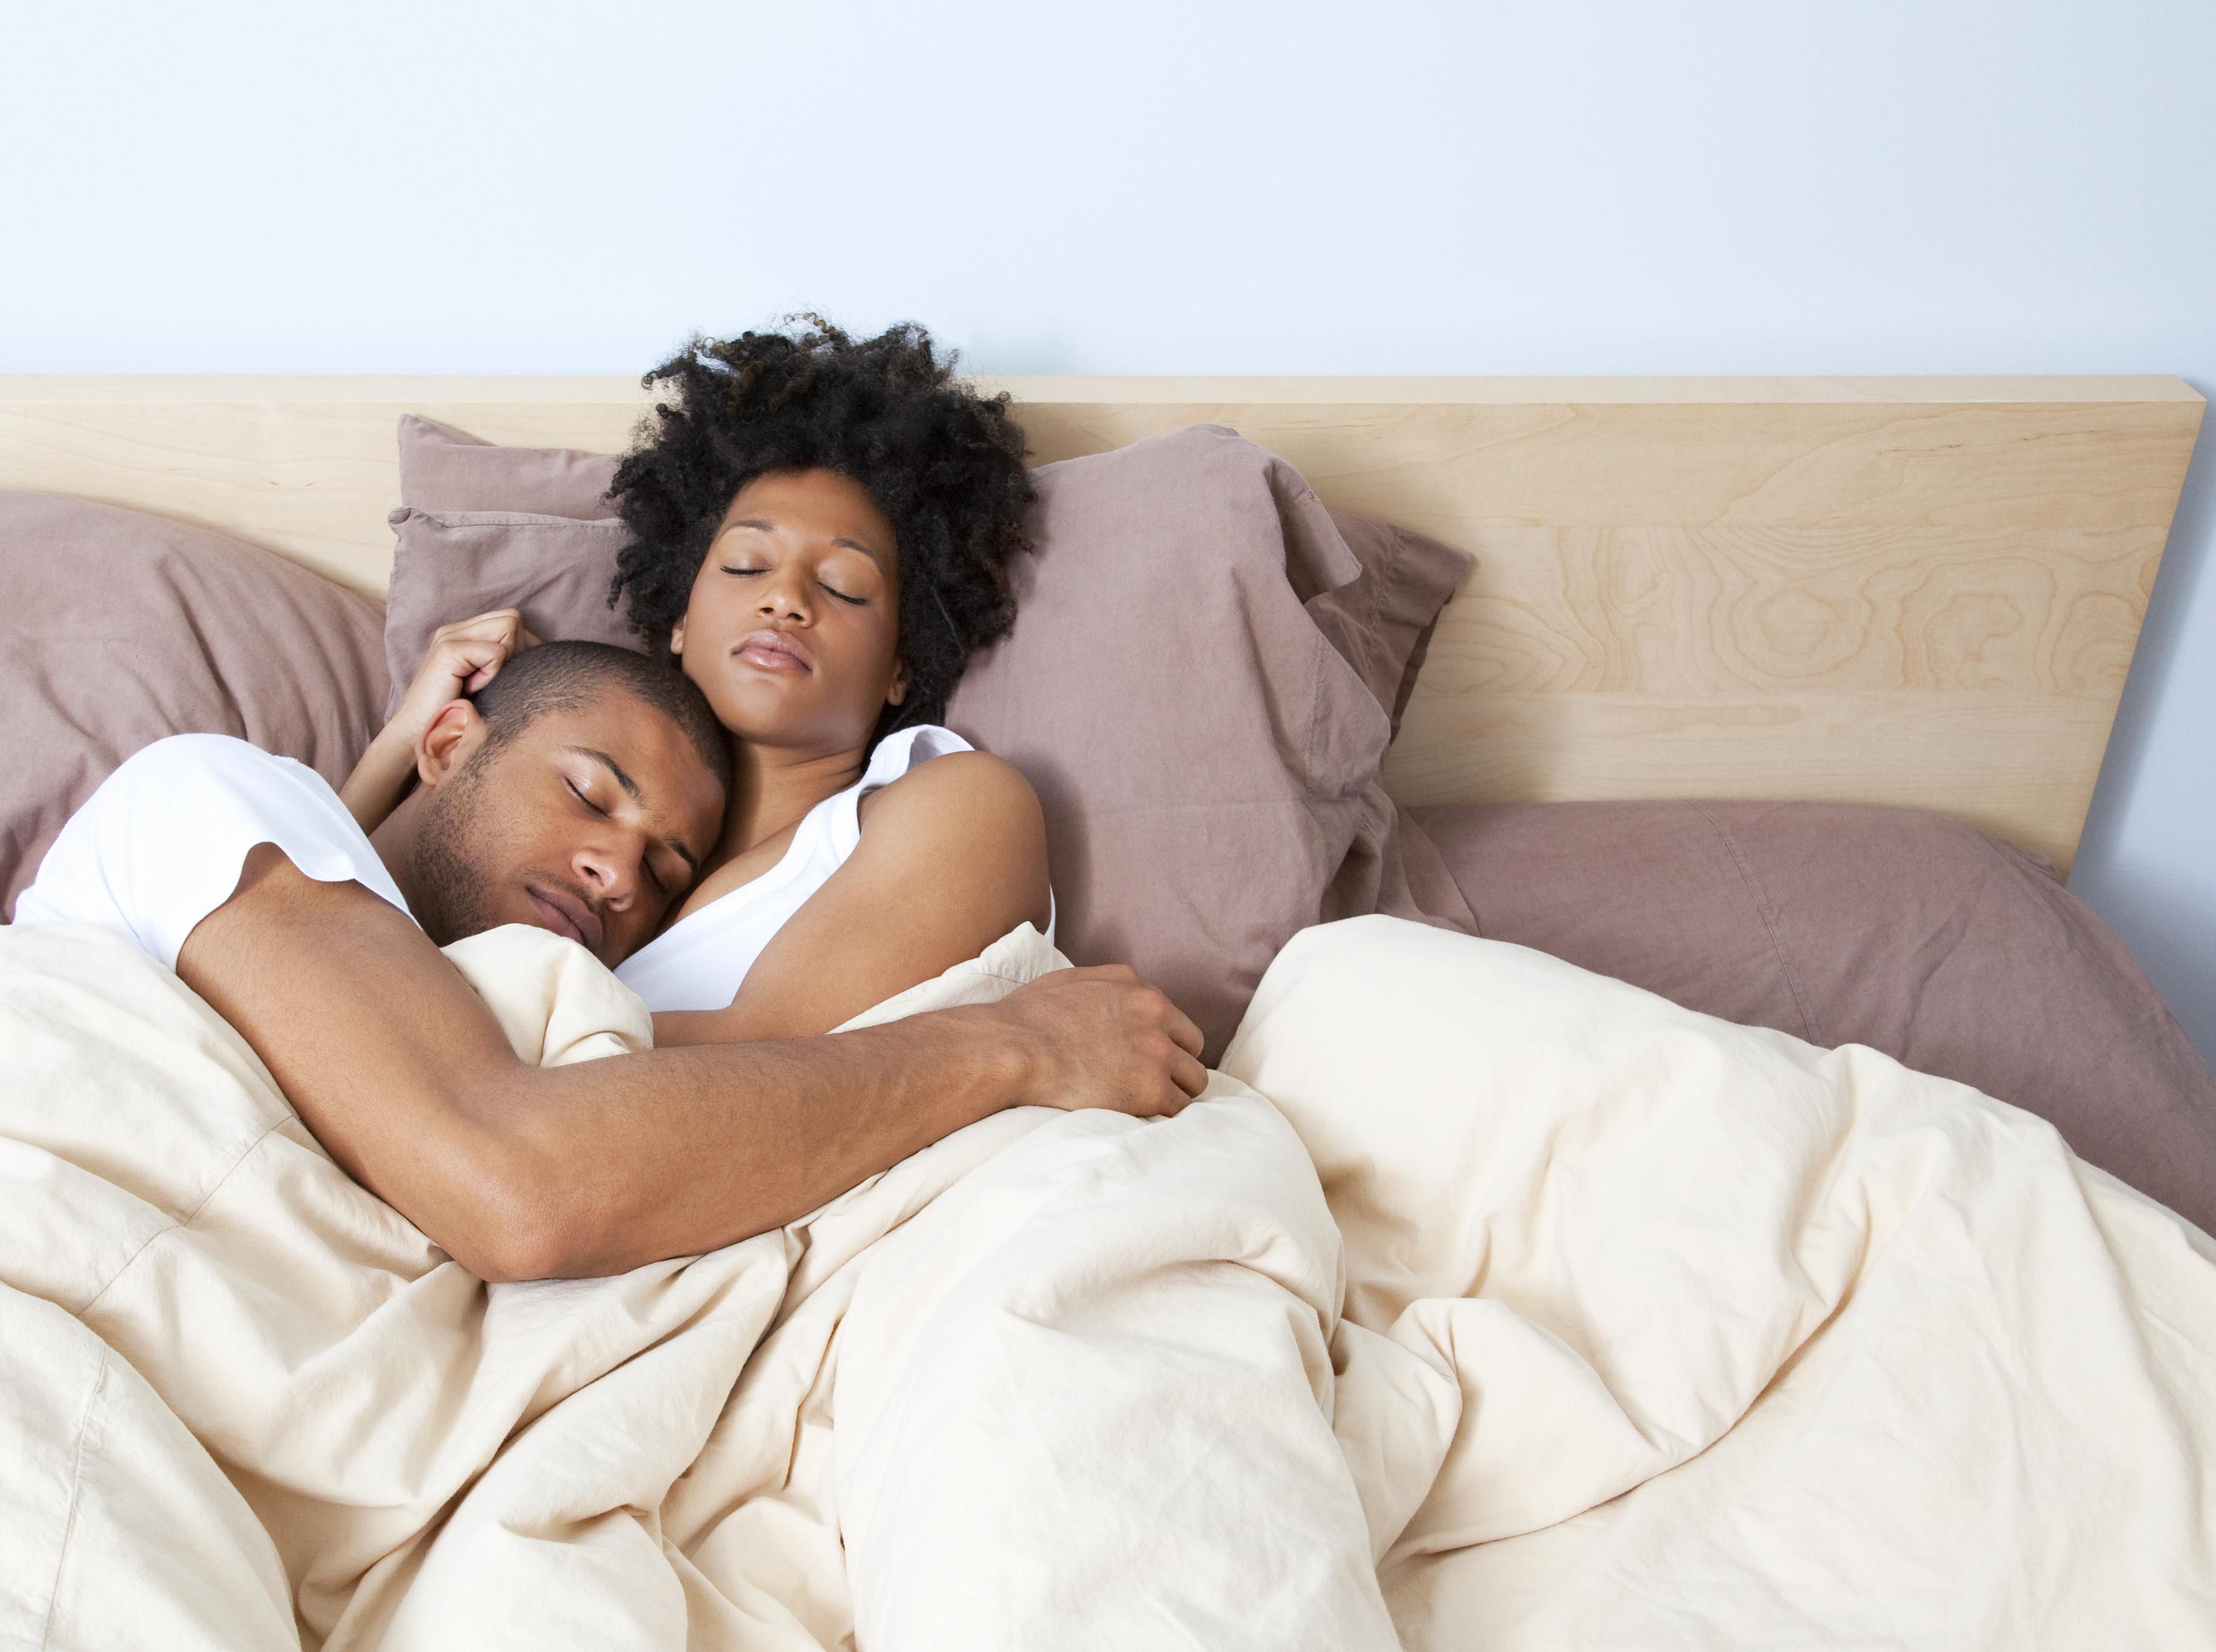 ¿En qué dirección debe dormir en el matrimonio?? - startupassembly.co